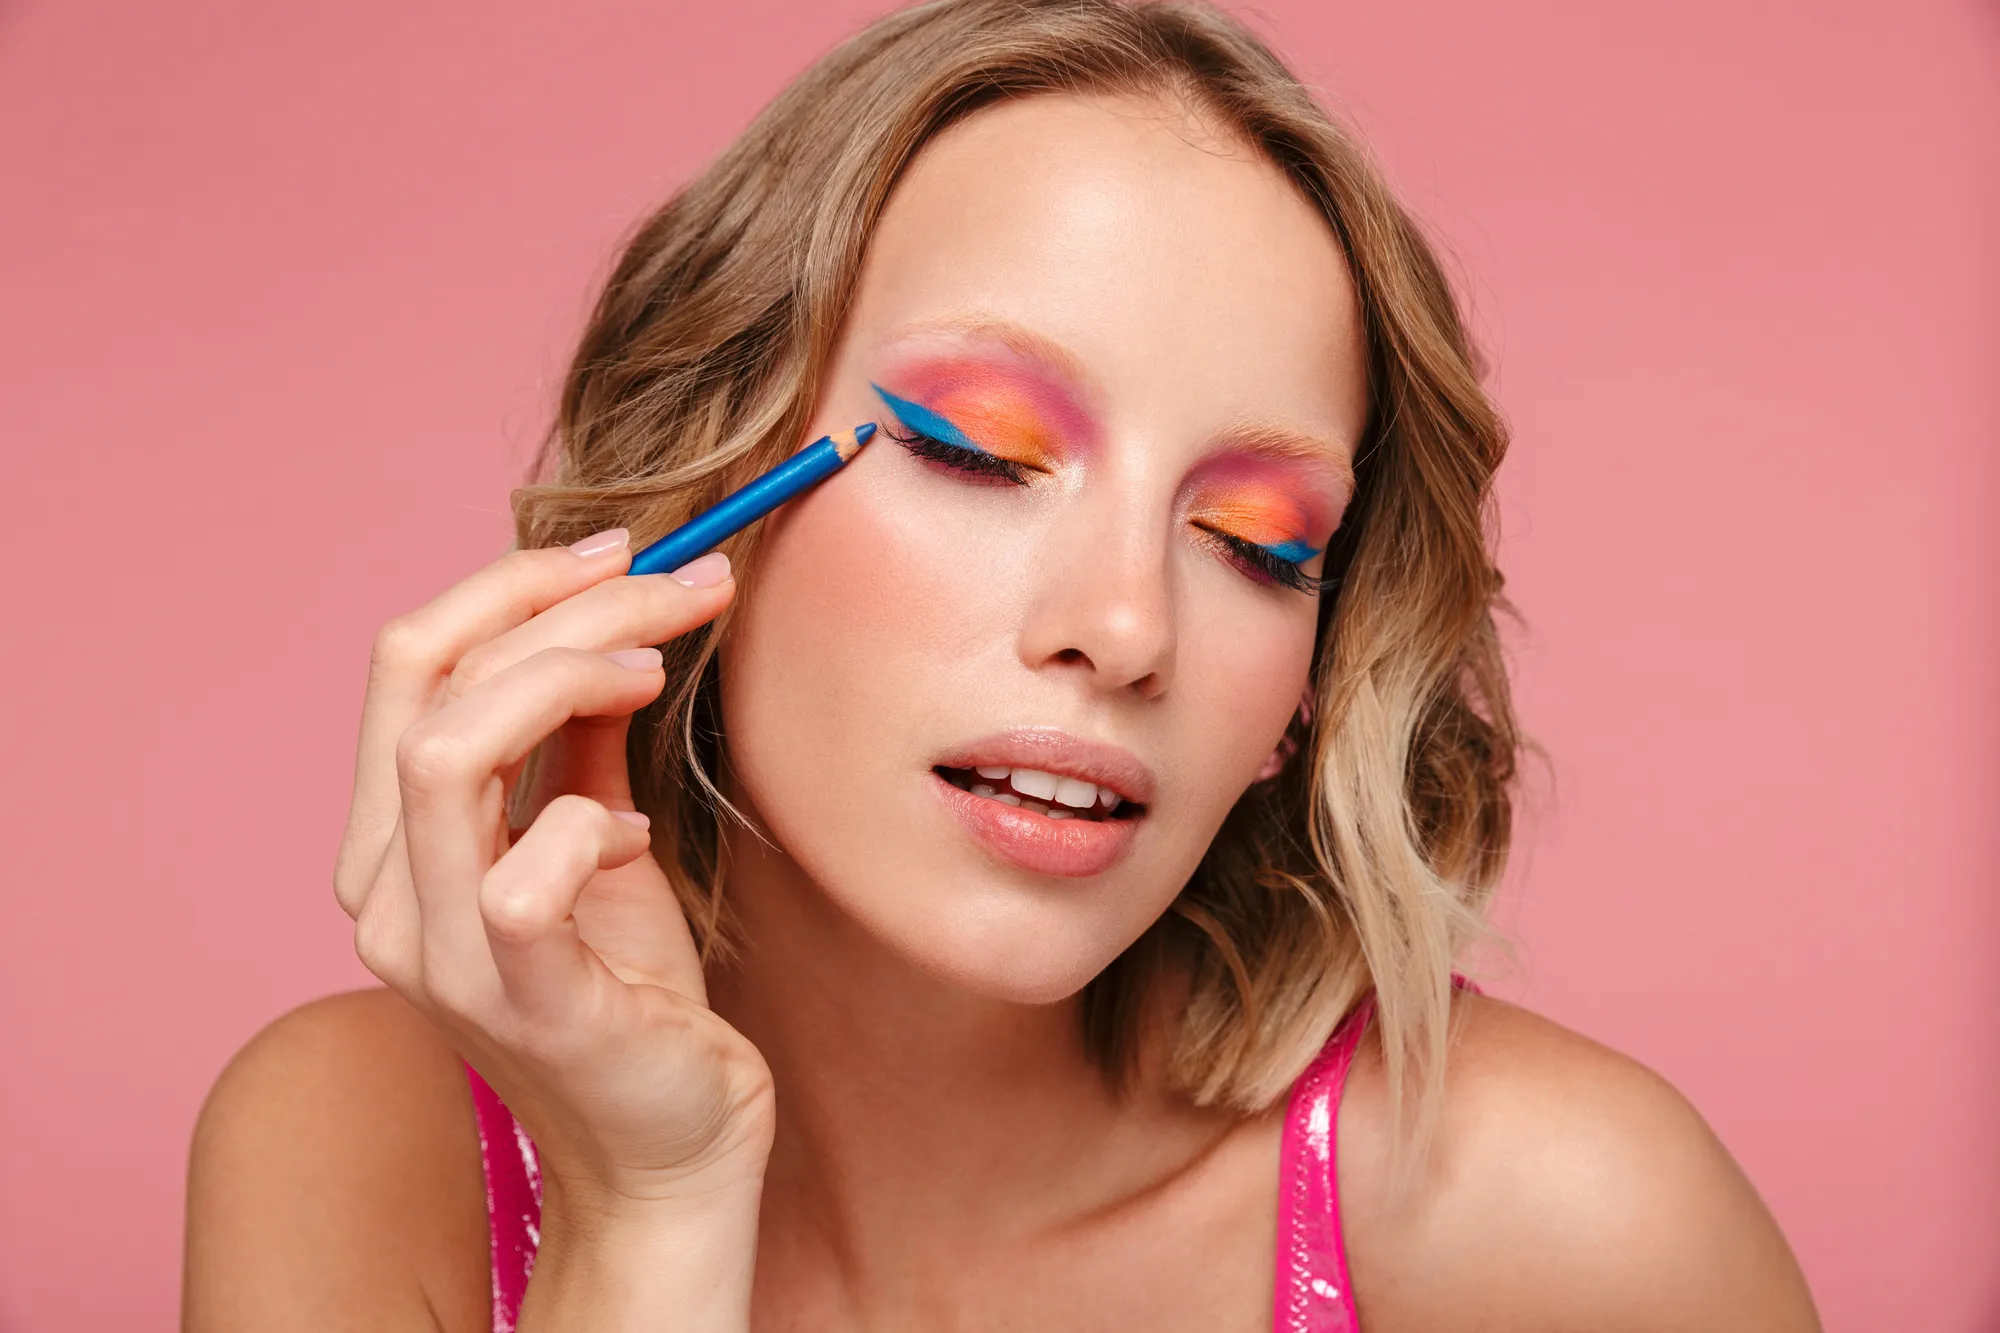 Тренды в макияже: актуальные стили и цветовые решения